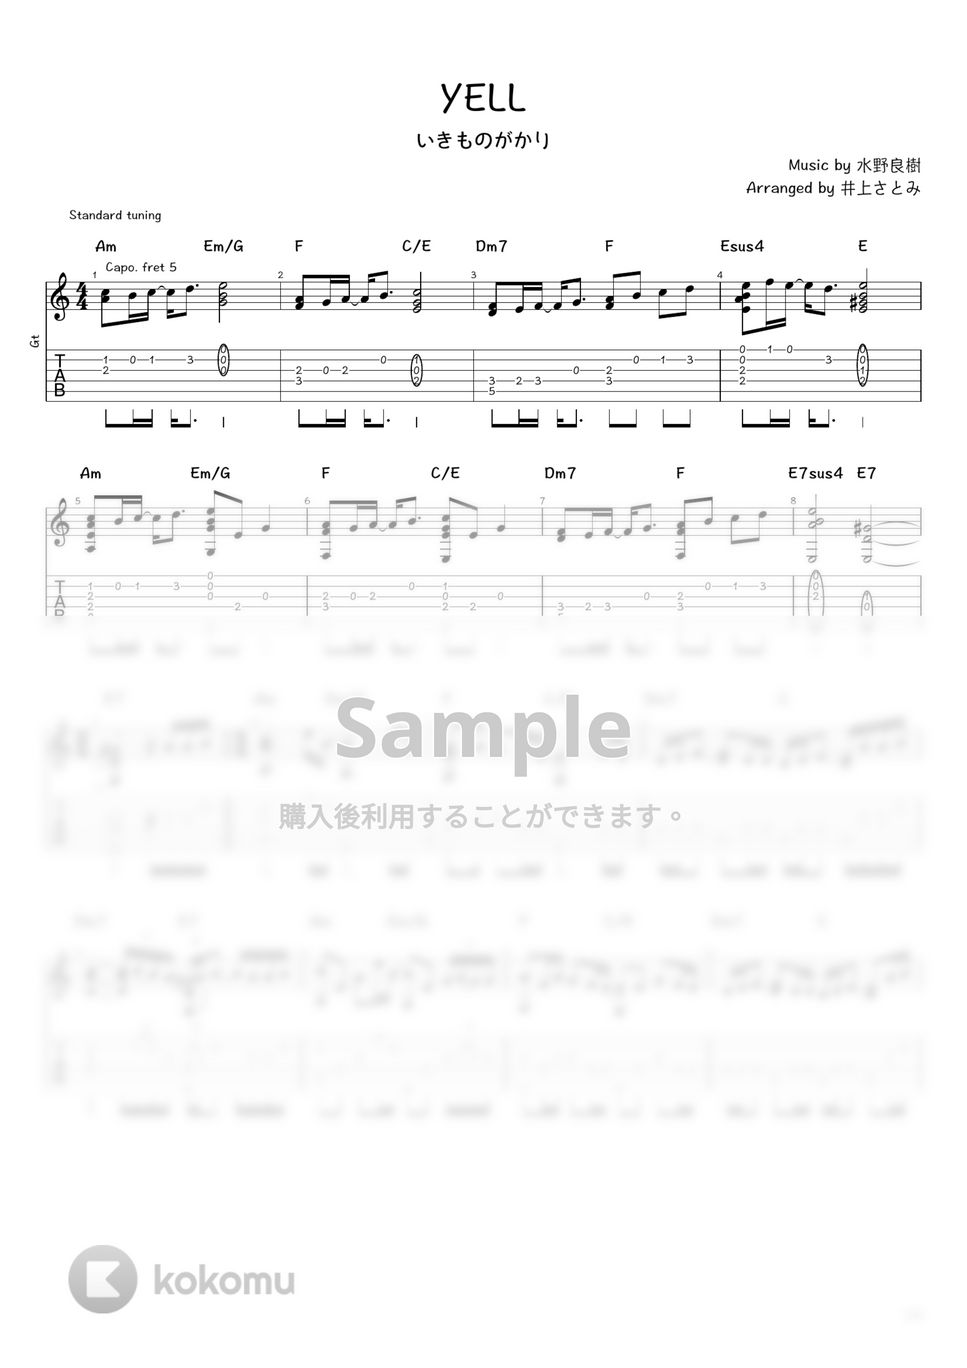 いきものがかり - YELL (ソロギター / タブ譜) by 井上さとみ